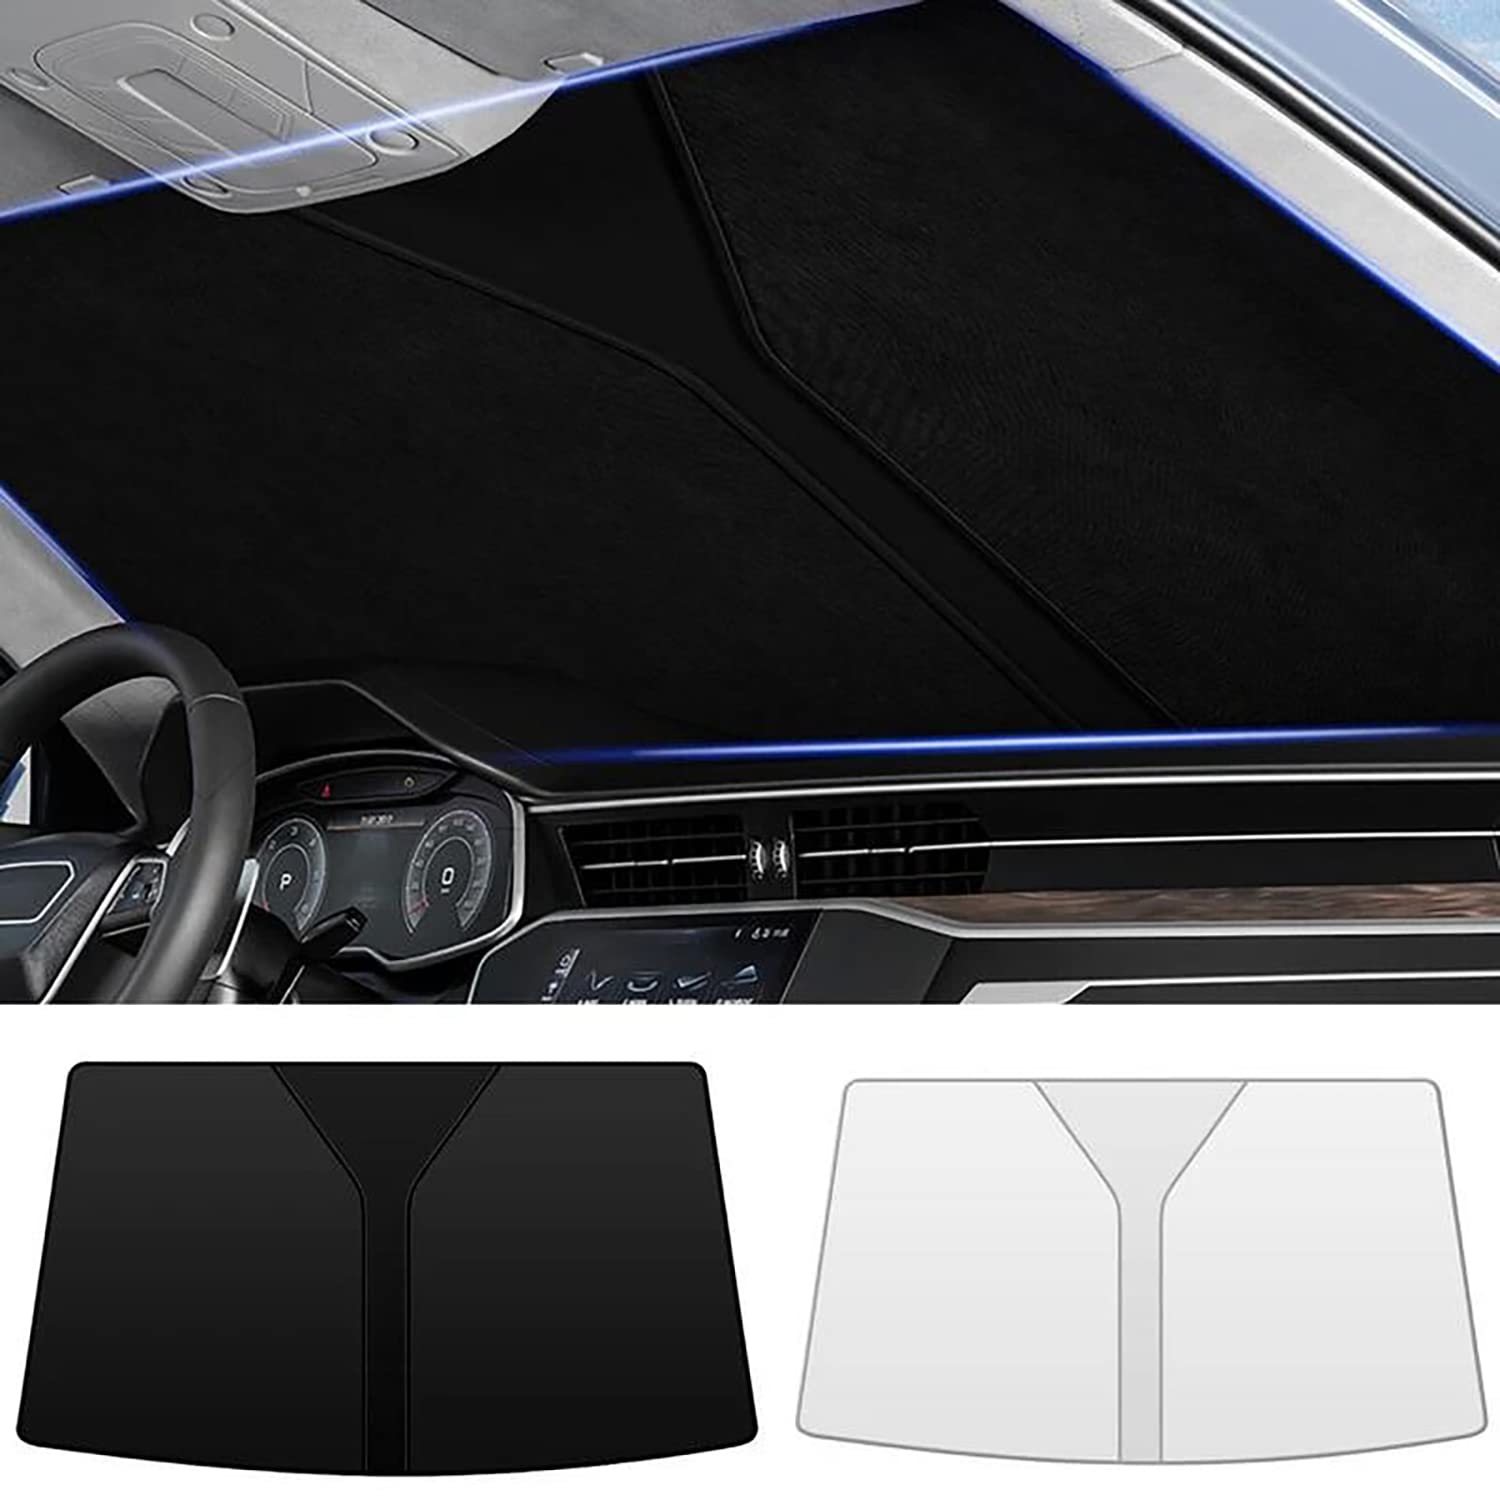 Frontscheiben Sonnenschutz Passend für VW Arteon 2017 2018 2019 2020 2021 2022+, Hitzeschutz Auto UV-Reflexion, Faltbares Design, Einfache Lagerung,- Black von TANEND